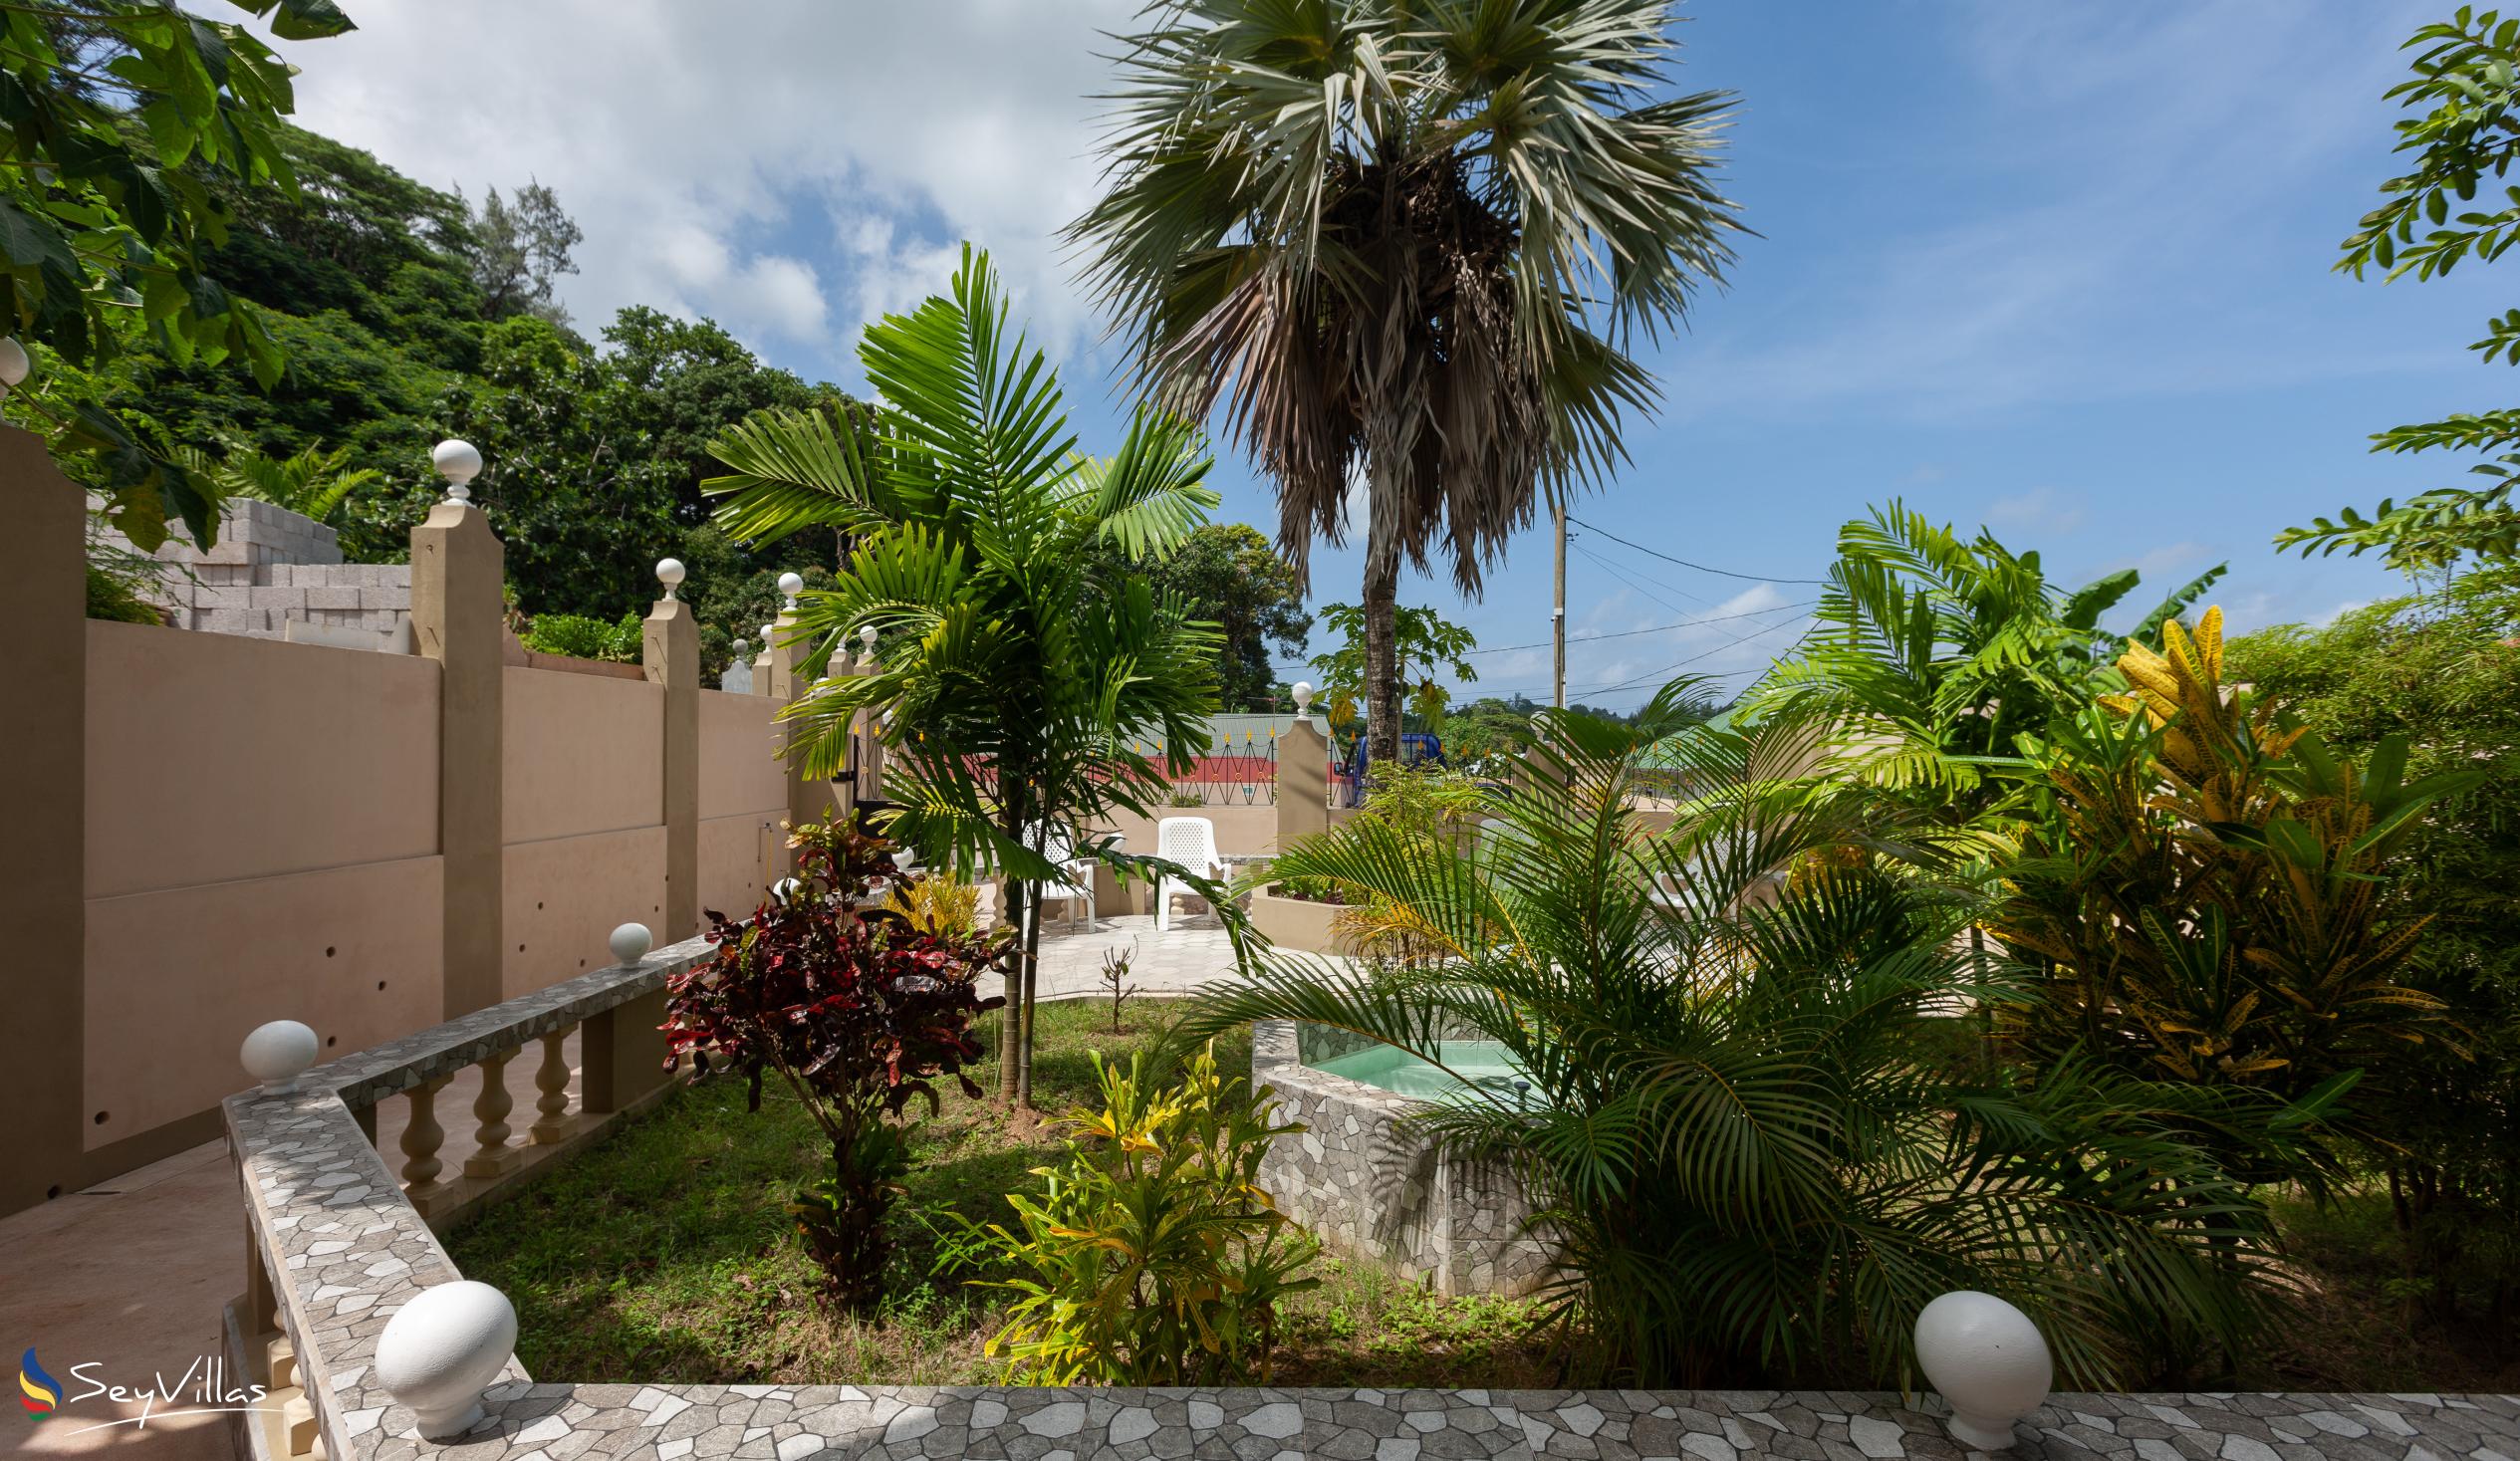 Foto 16: La Residence d'Almee - Aussenbereich - Praslin (Seychellen)